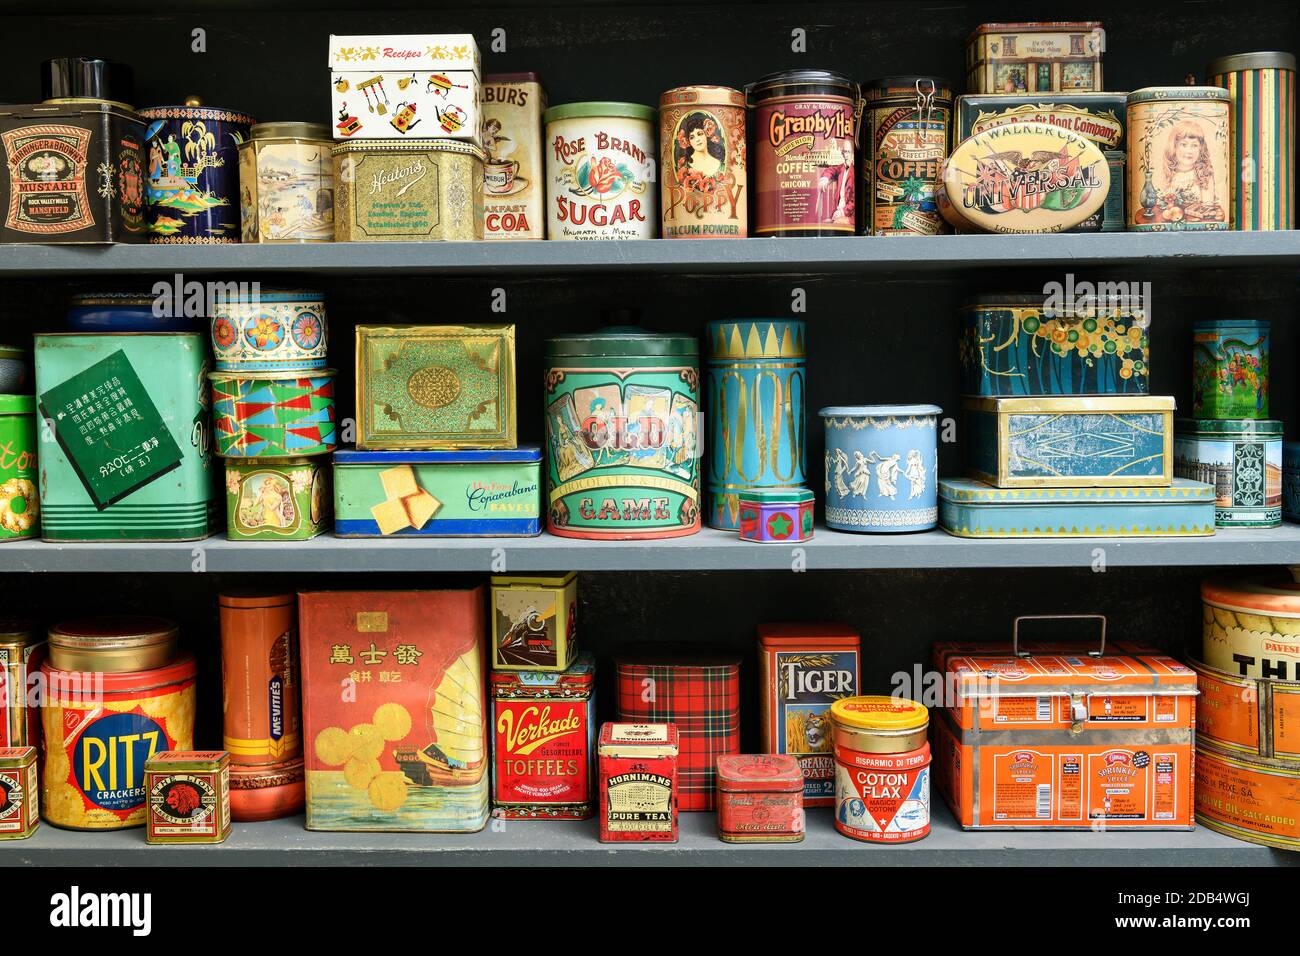 Grande collection de boîtes vintage colorées sur une étagère utilisée comme emballage de détail avec publicité de marque et disposées selon la couleur Banque D'Images